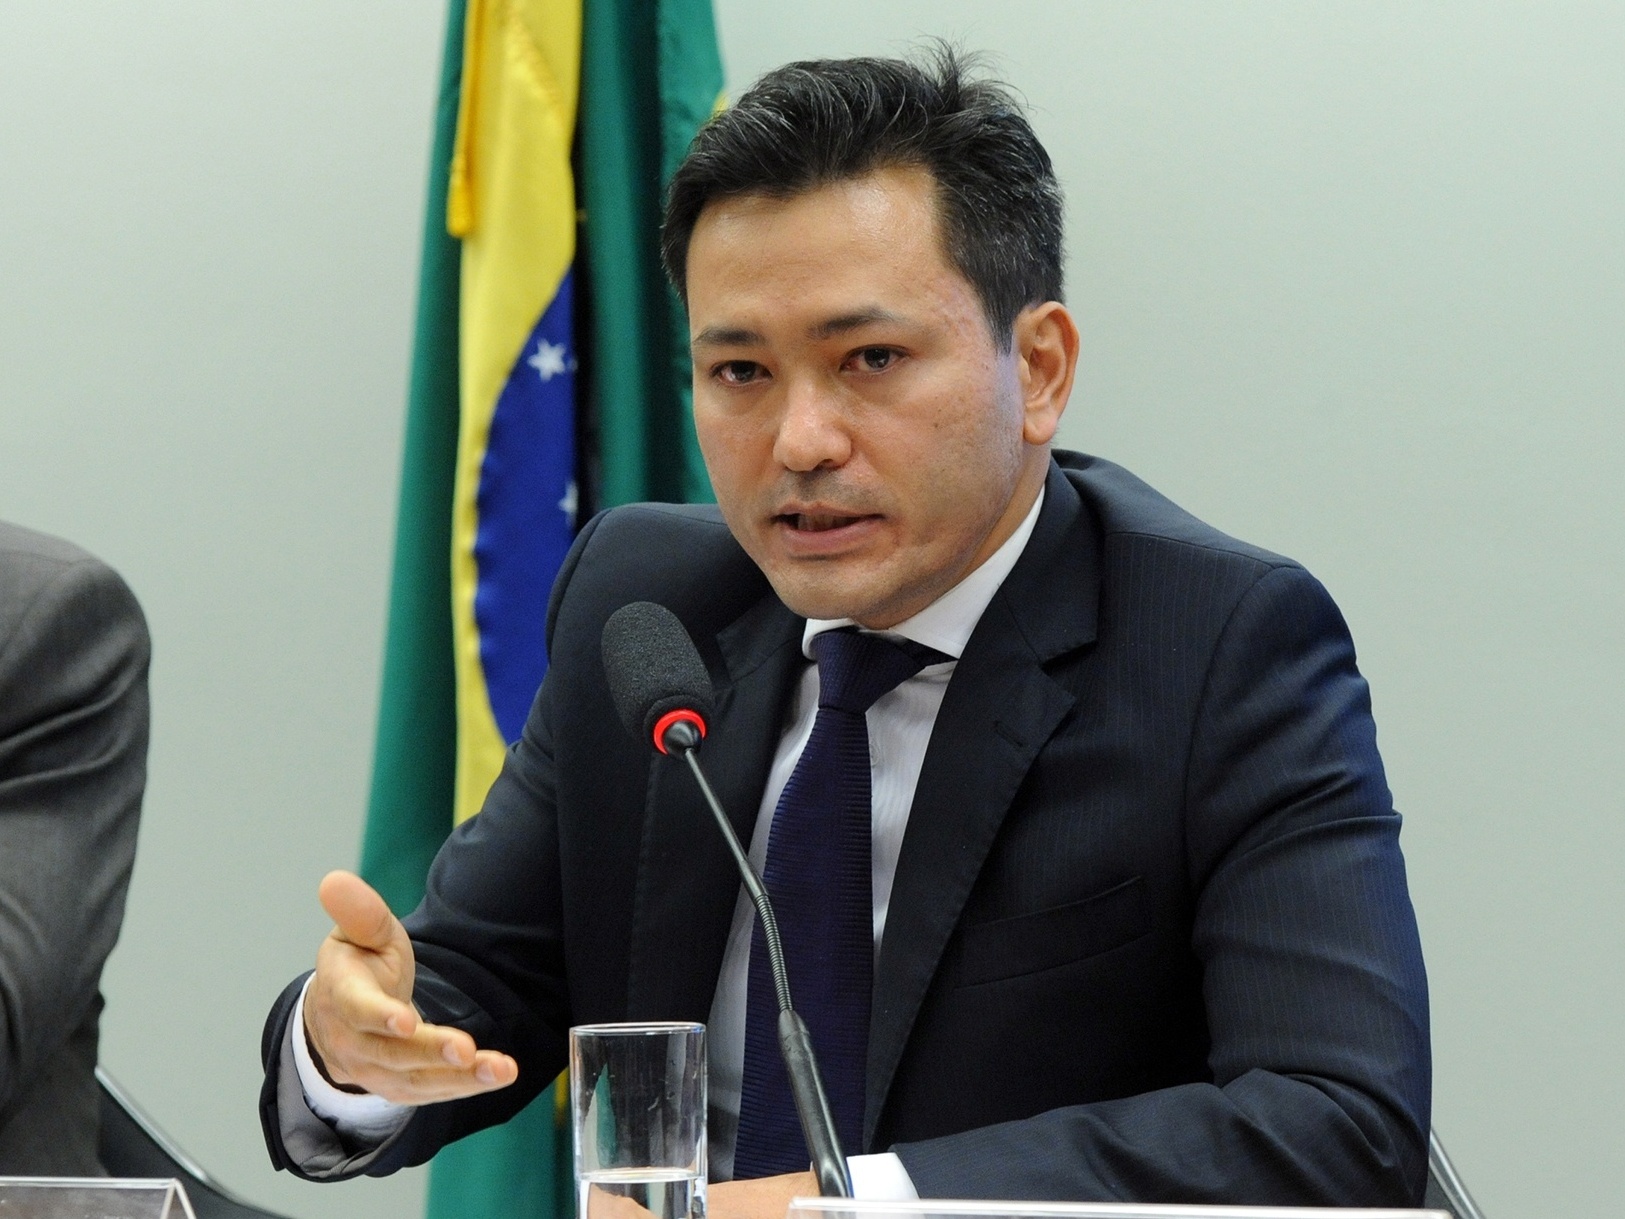 Varejistas querem a taxação de e-commerces estrangeiros no Brasil